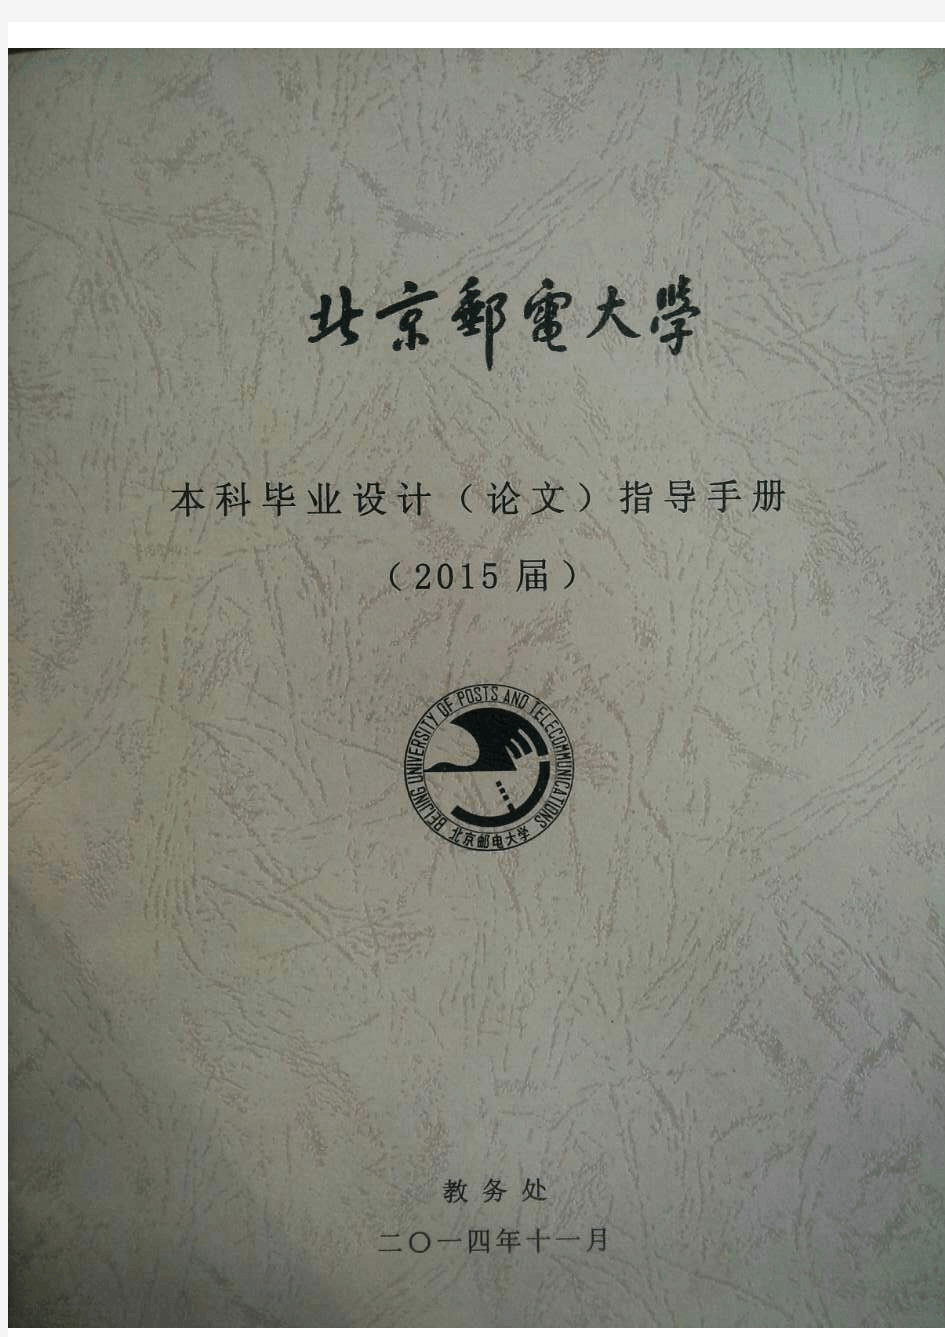 北京邮电大学本科毕业设计(论文)指导手册